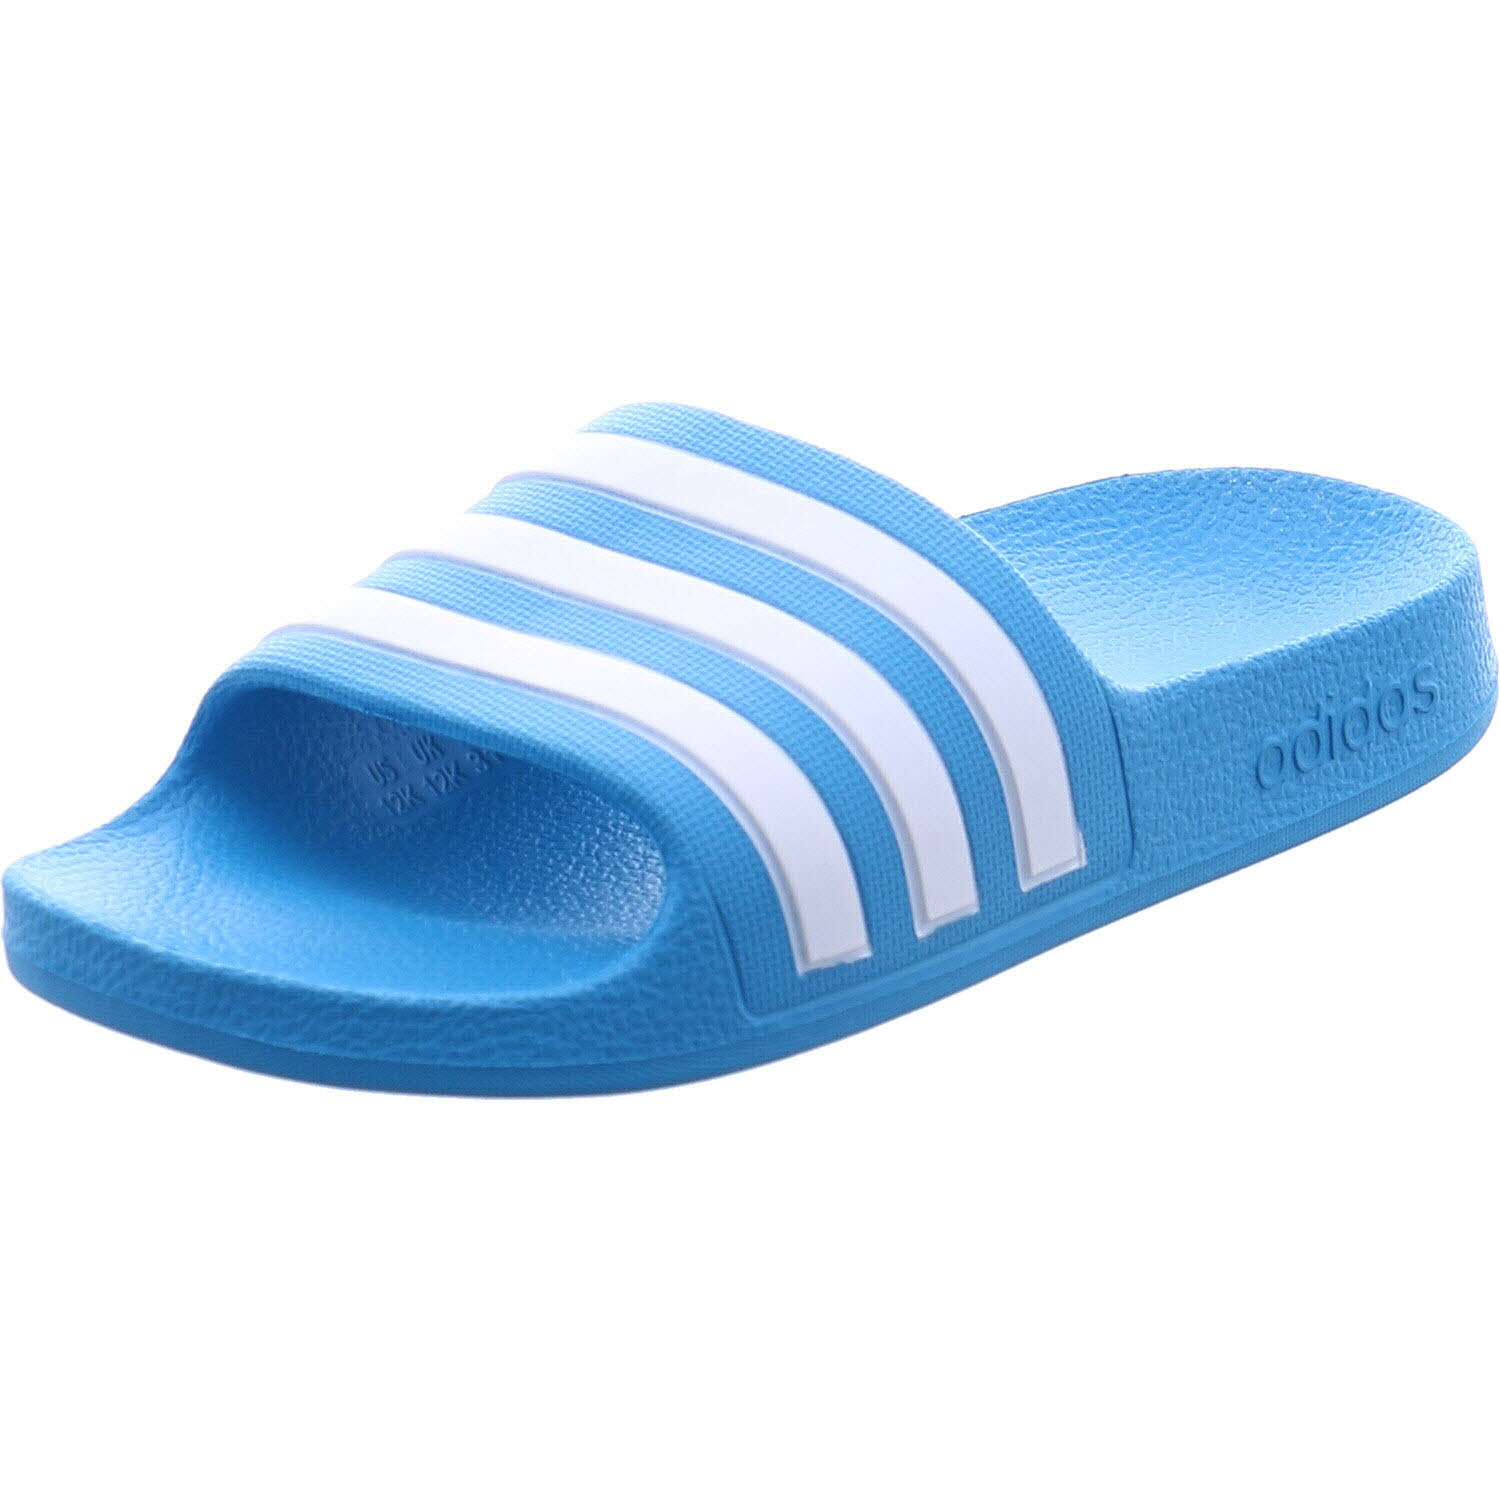 Jungen Badeschuh von Adidas auch in Blau erhältlich